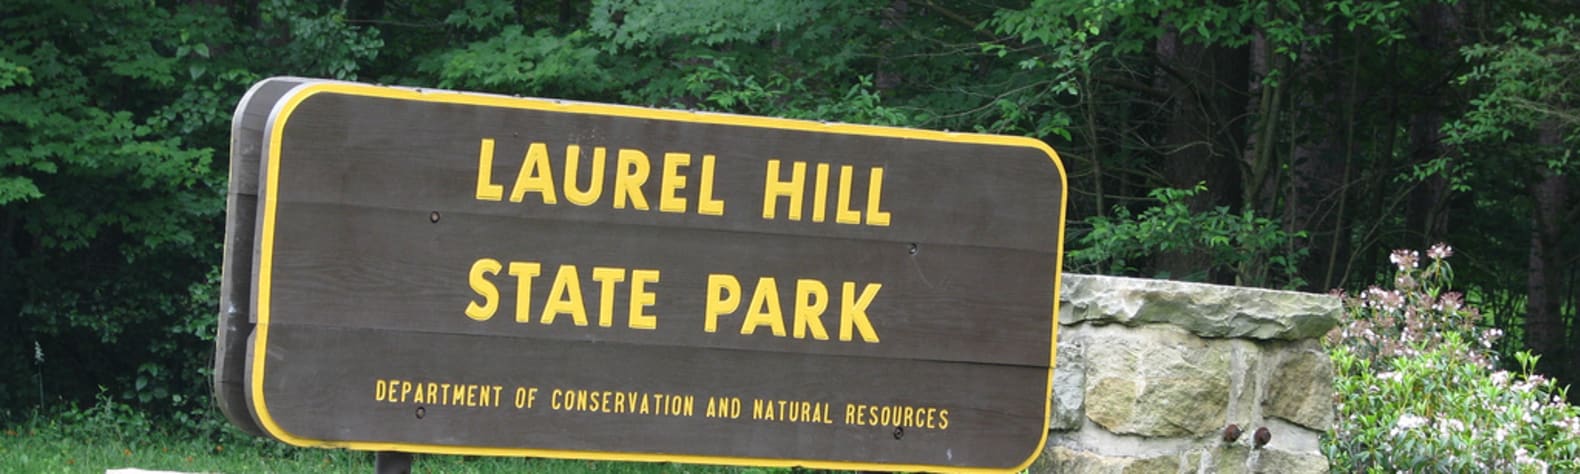 Laurel Hill State Park